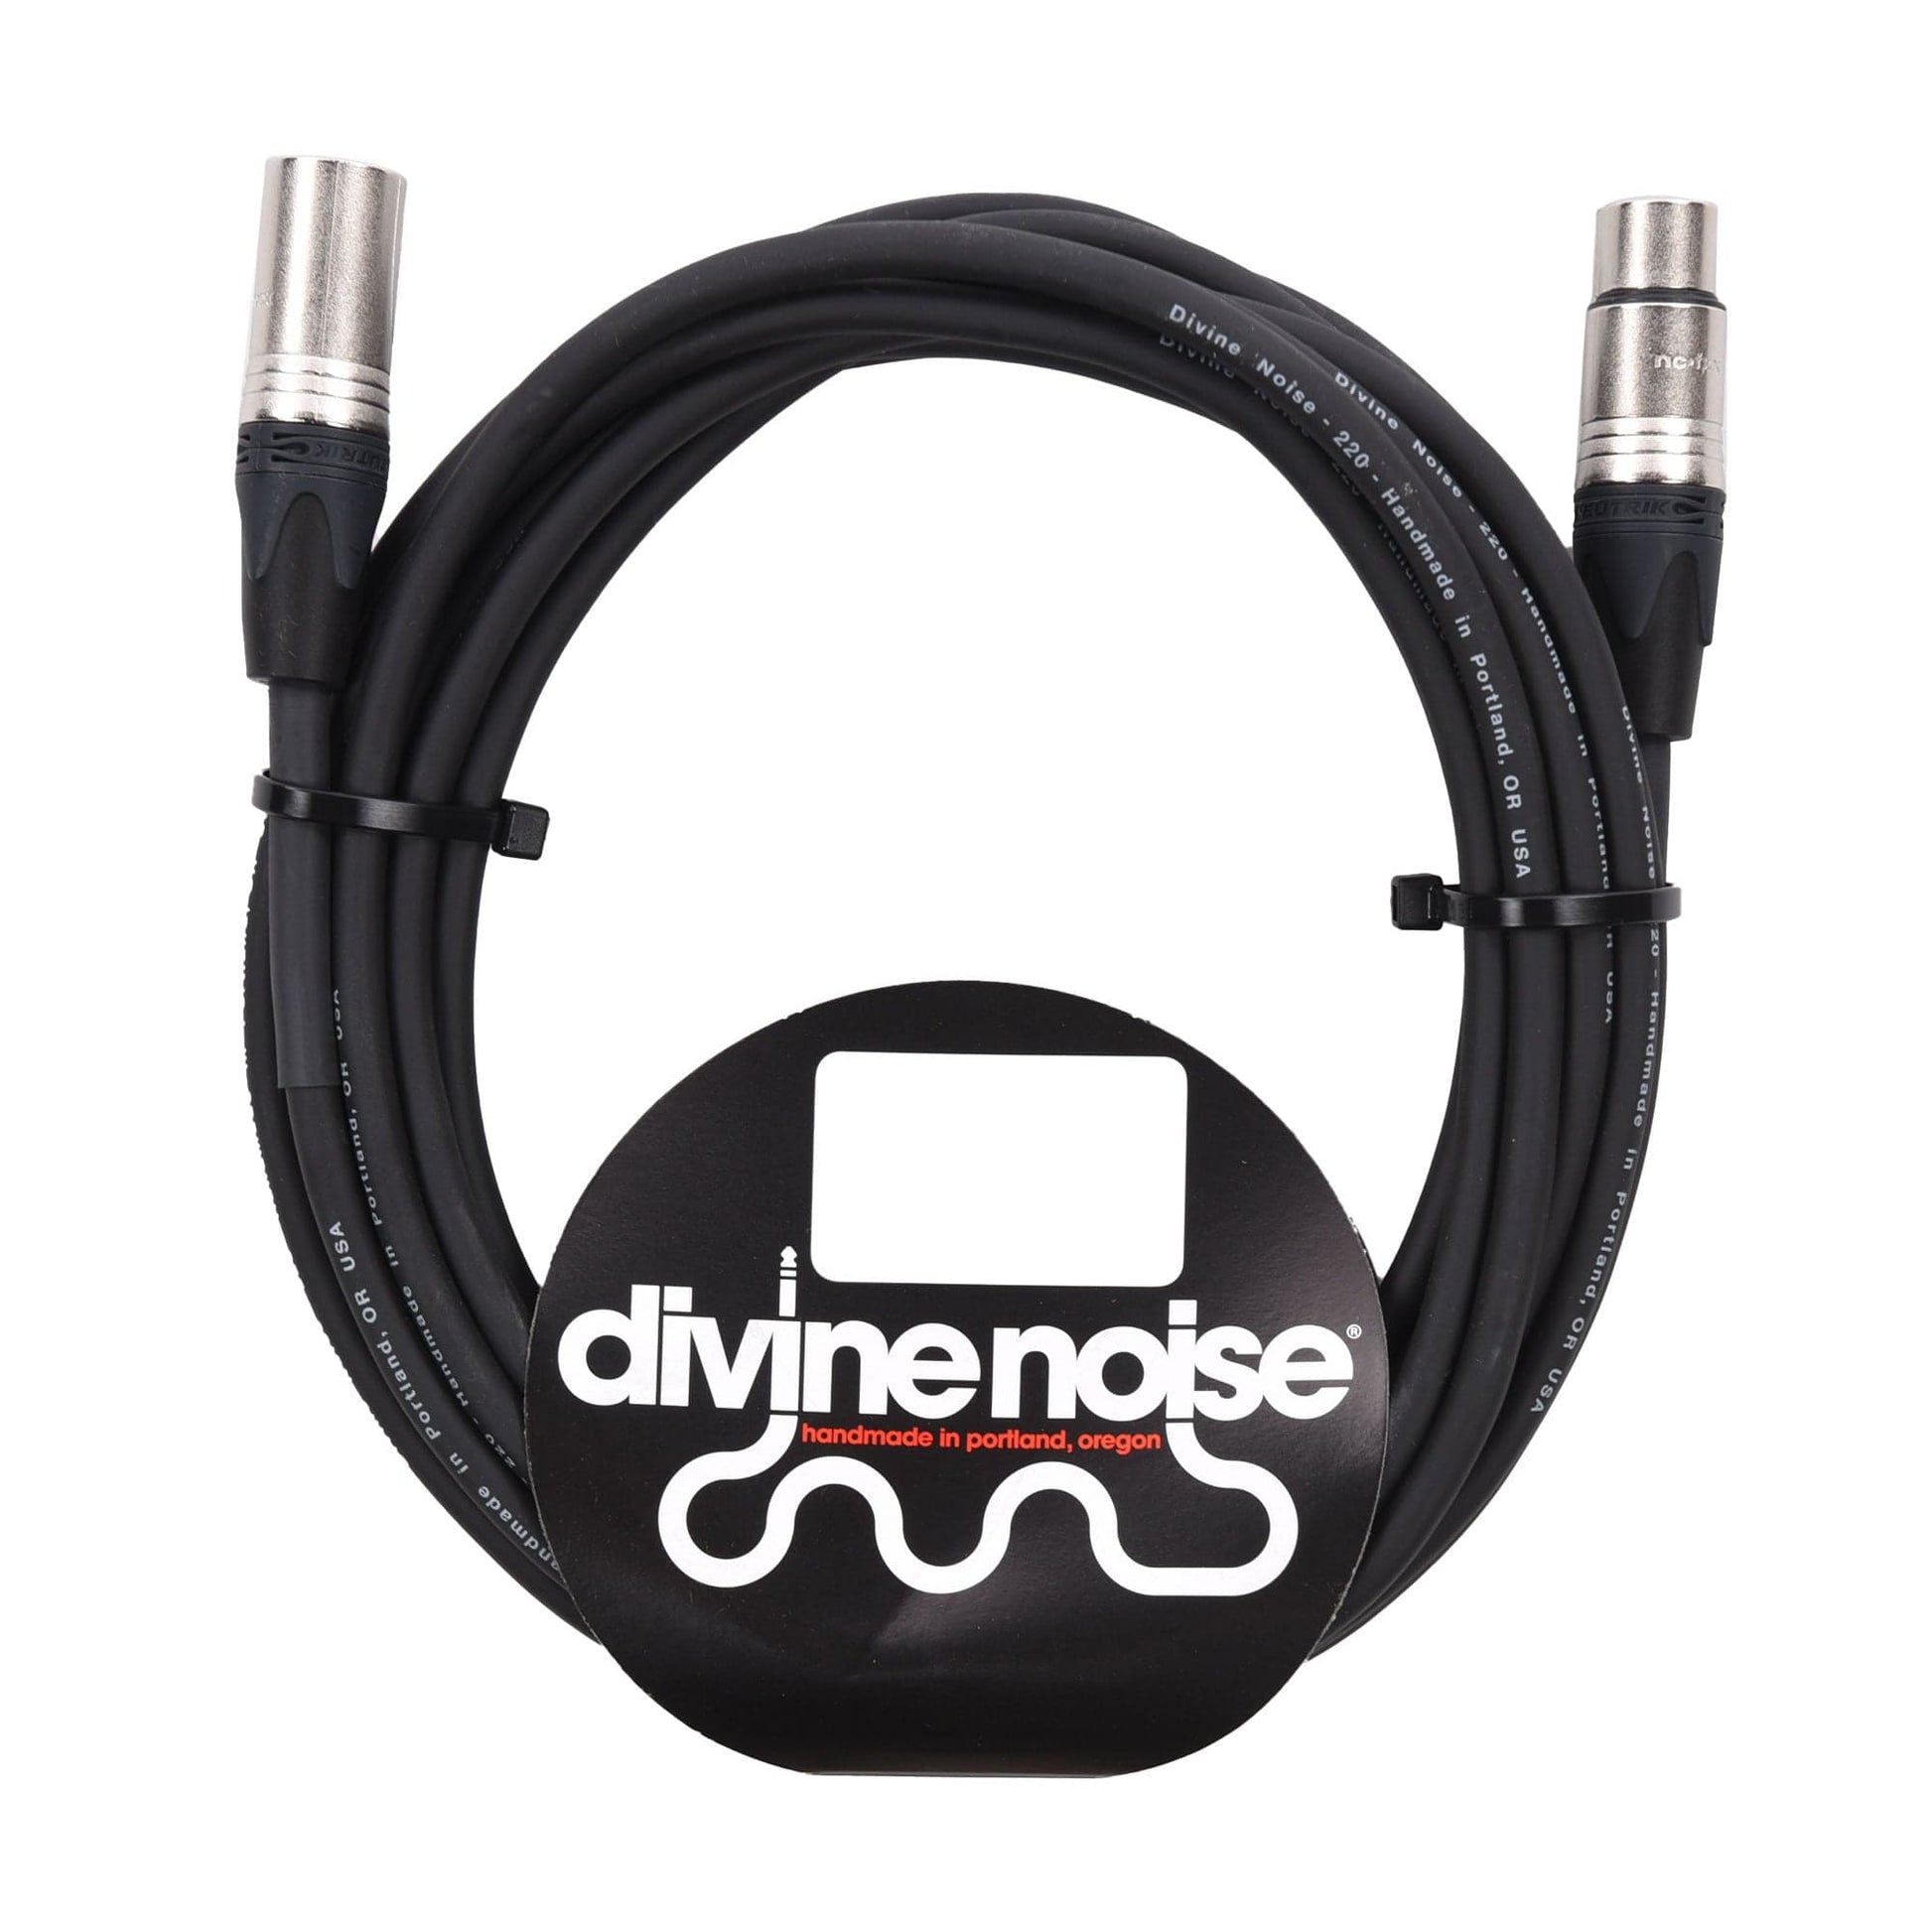 Divine Noise XLR 220 Cable Black 25' Male-Female Accessories / Cables